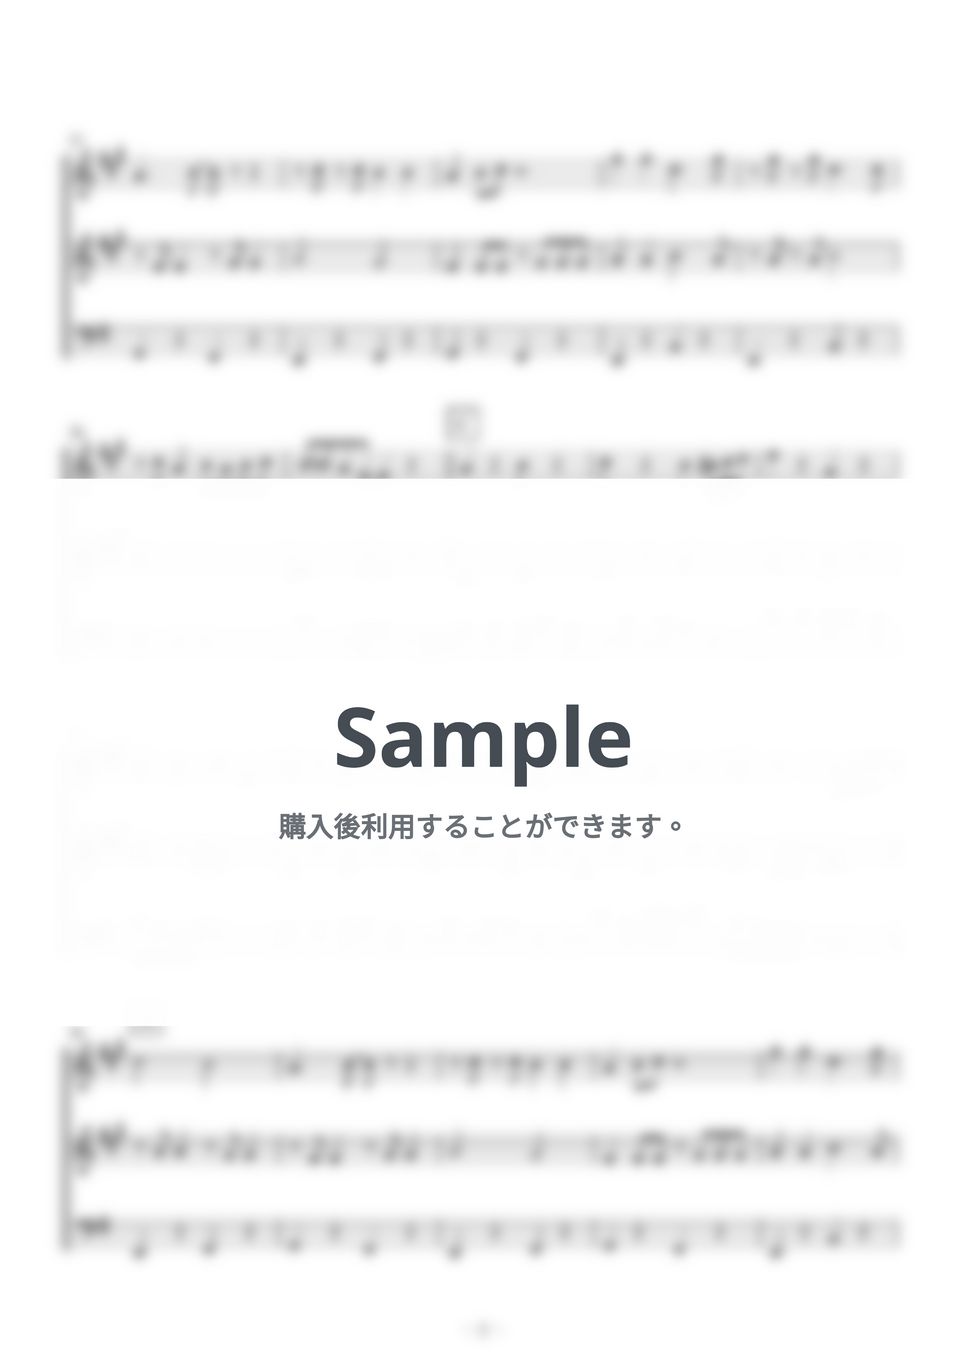 ベニーグッドマン - Sing,Sing,Sing (トランペット・トロンボーン三重奏) by kiminabe